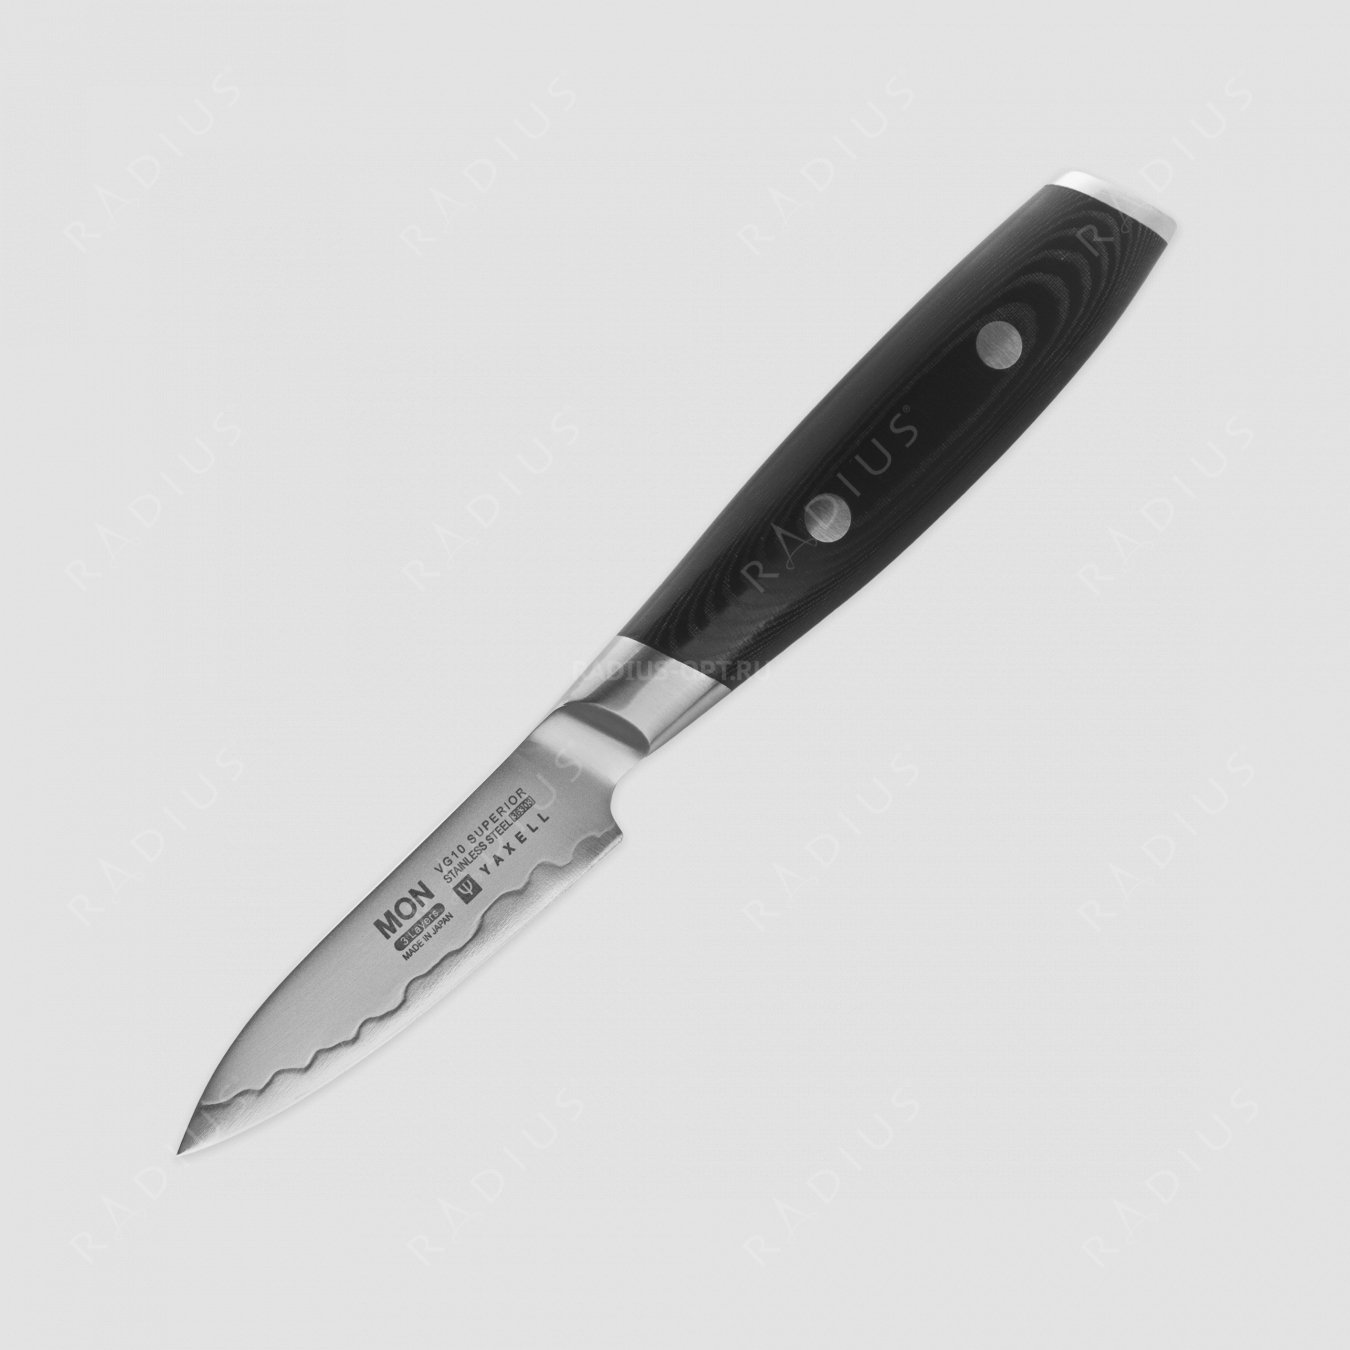 Нож кухонный для чистки 8 см, «Petty», сталь VG-10 в обкладке из нержавеющей стали, серия Mon, YAXELL, Япония